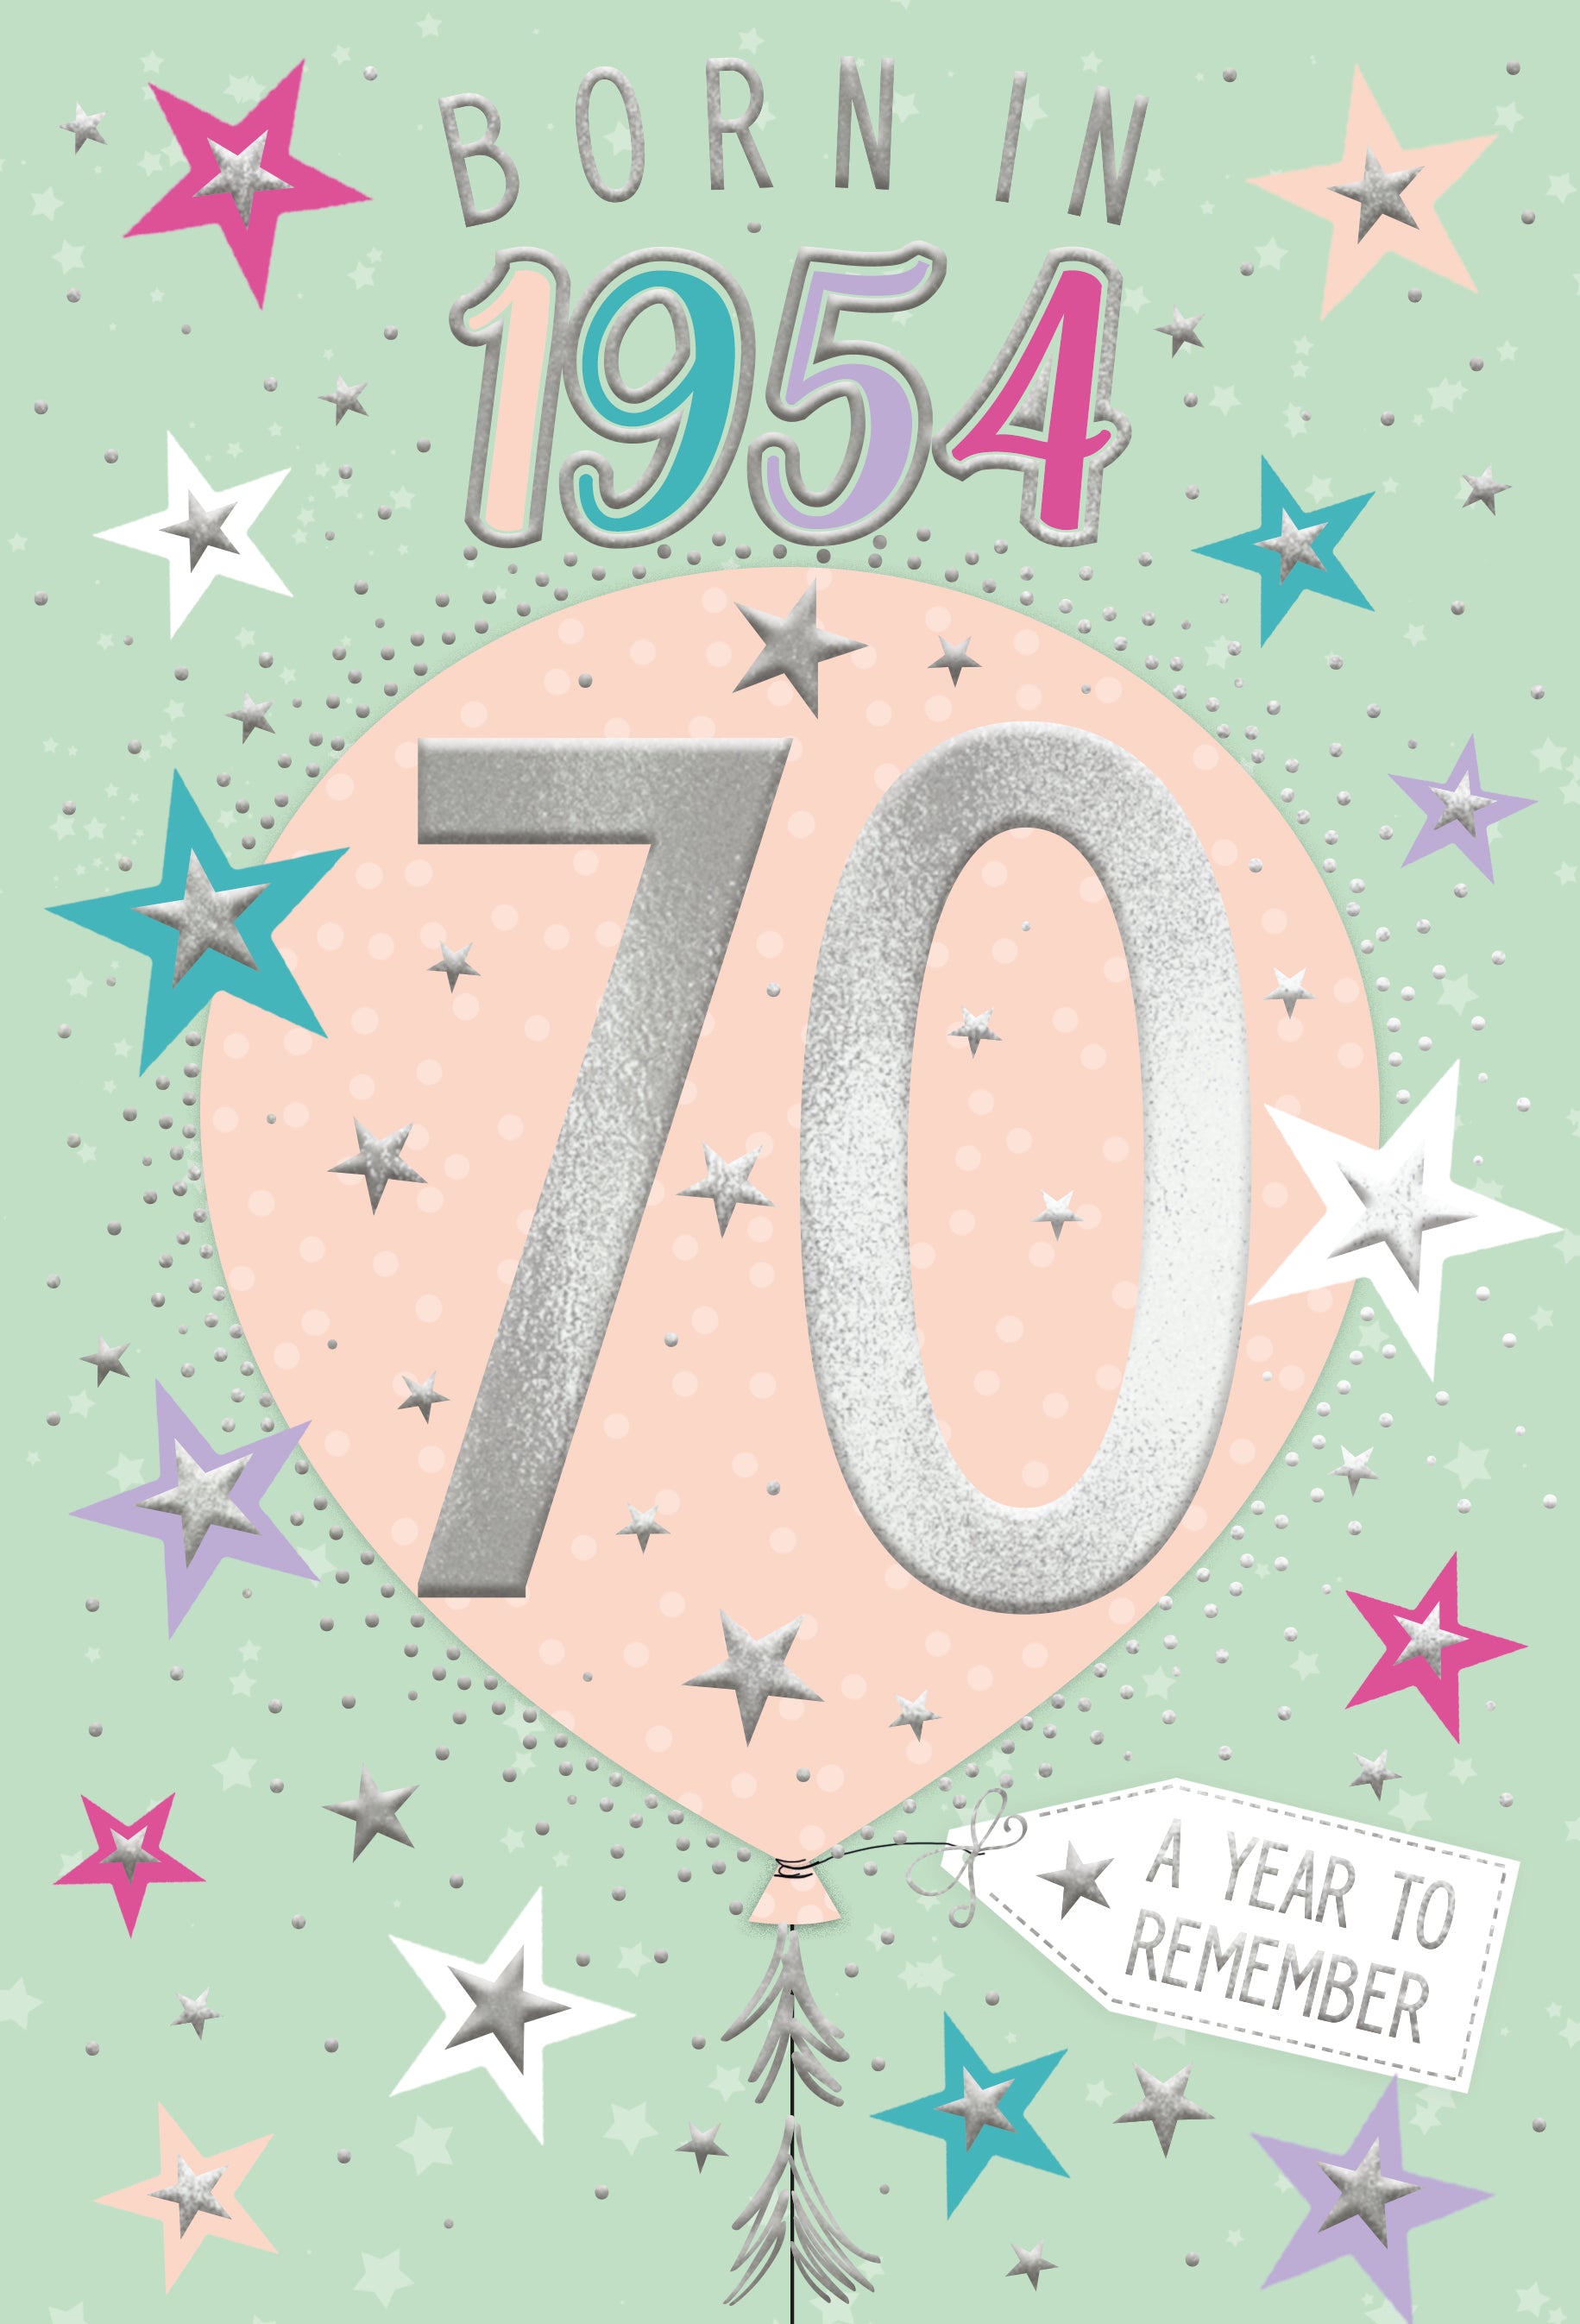 70th birthday card- born in 1954